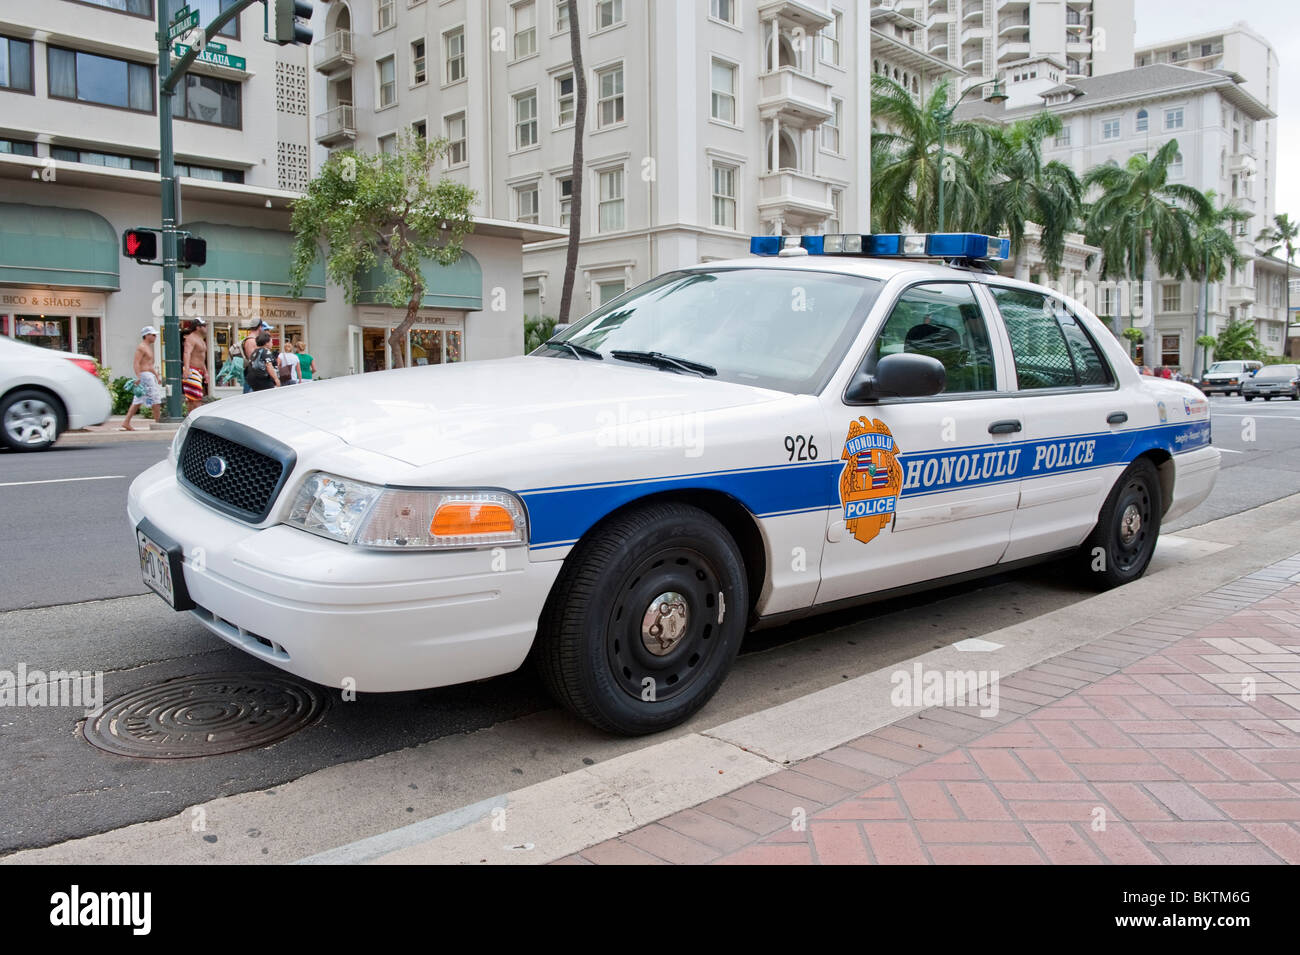 Honolulu Police Car at Waikiki, Hawaii, USA Stock Photo